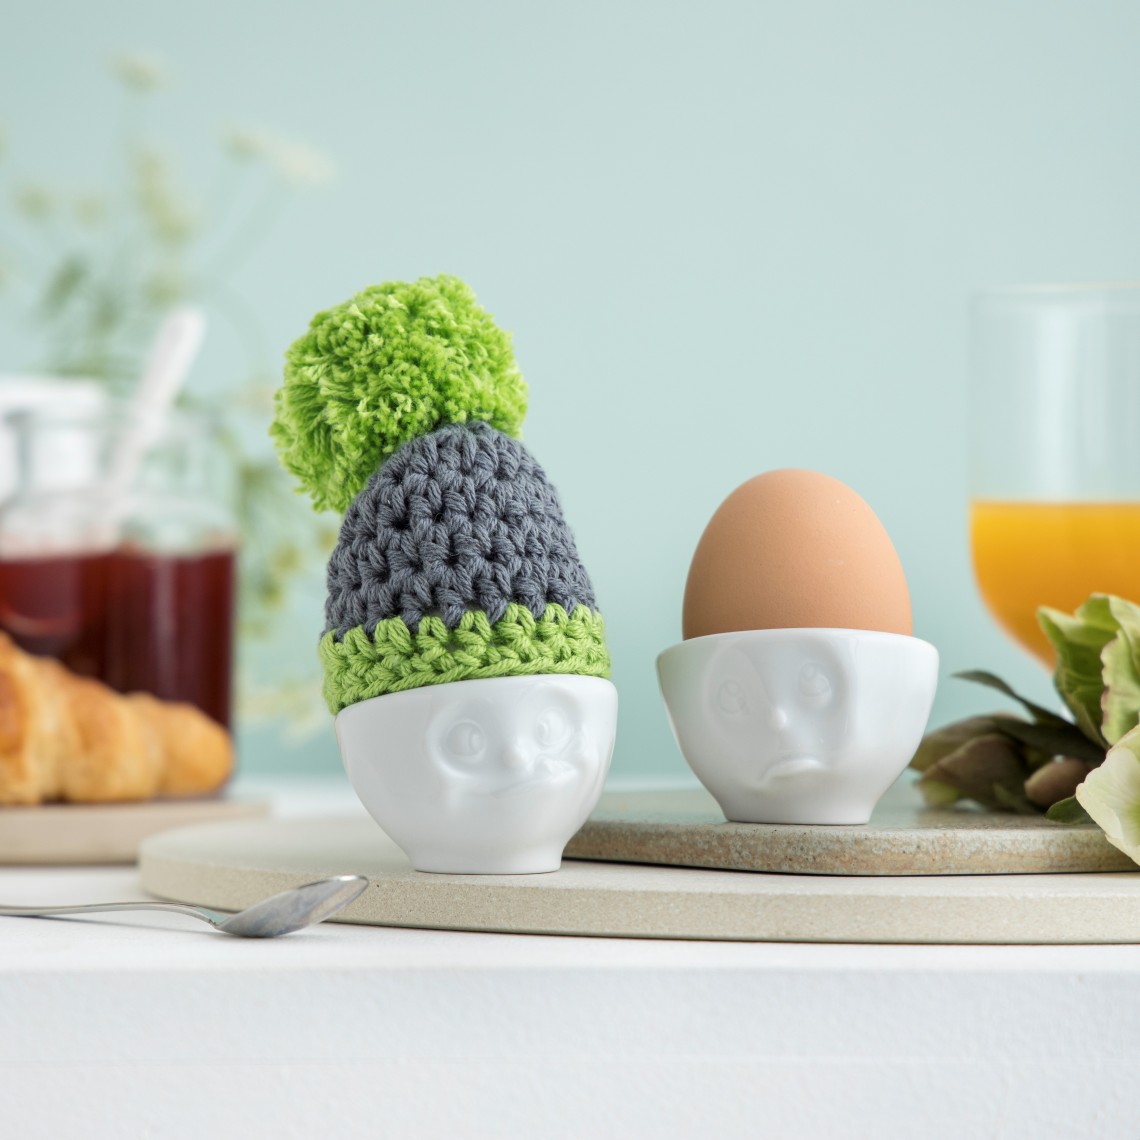 Kiaušinio indo kepurė Pilkai/Žalia. Pagaminta rankomis iš myboshi - vilnos, Vokietijoje. Kaina 5,90€.